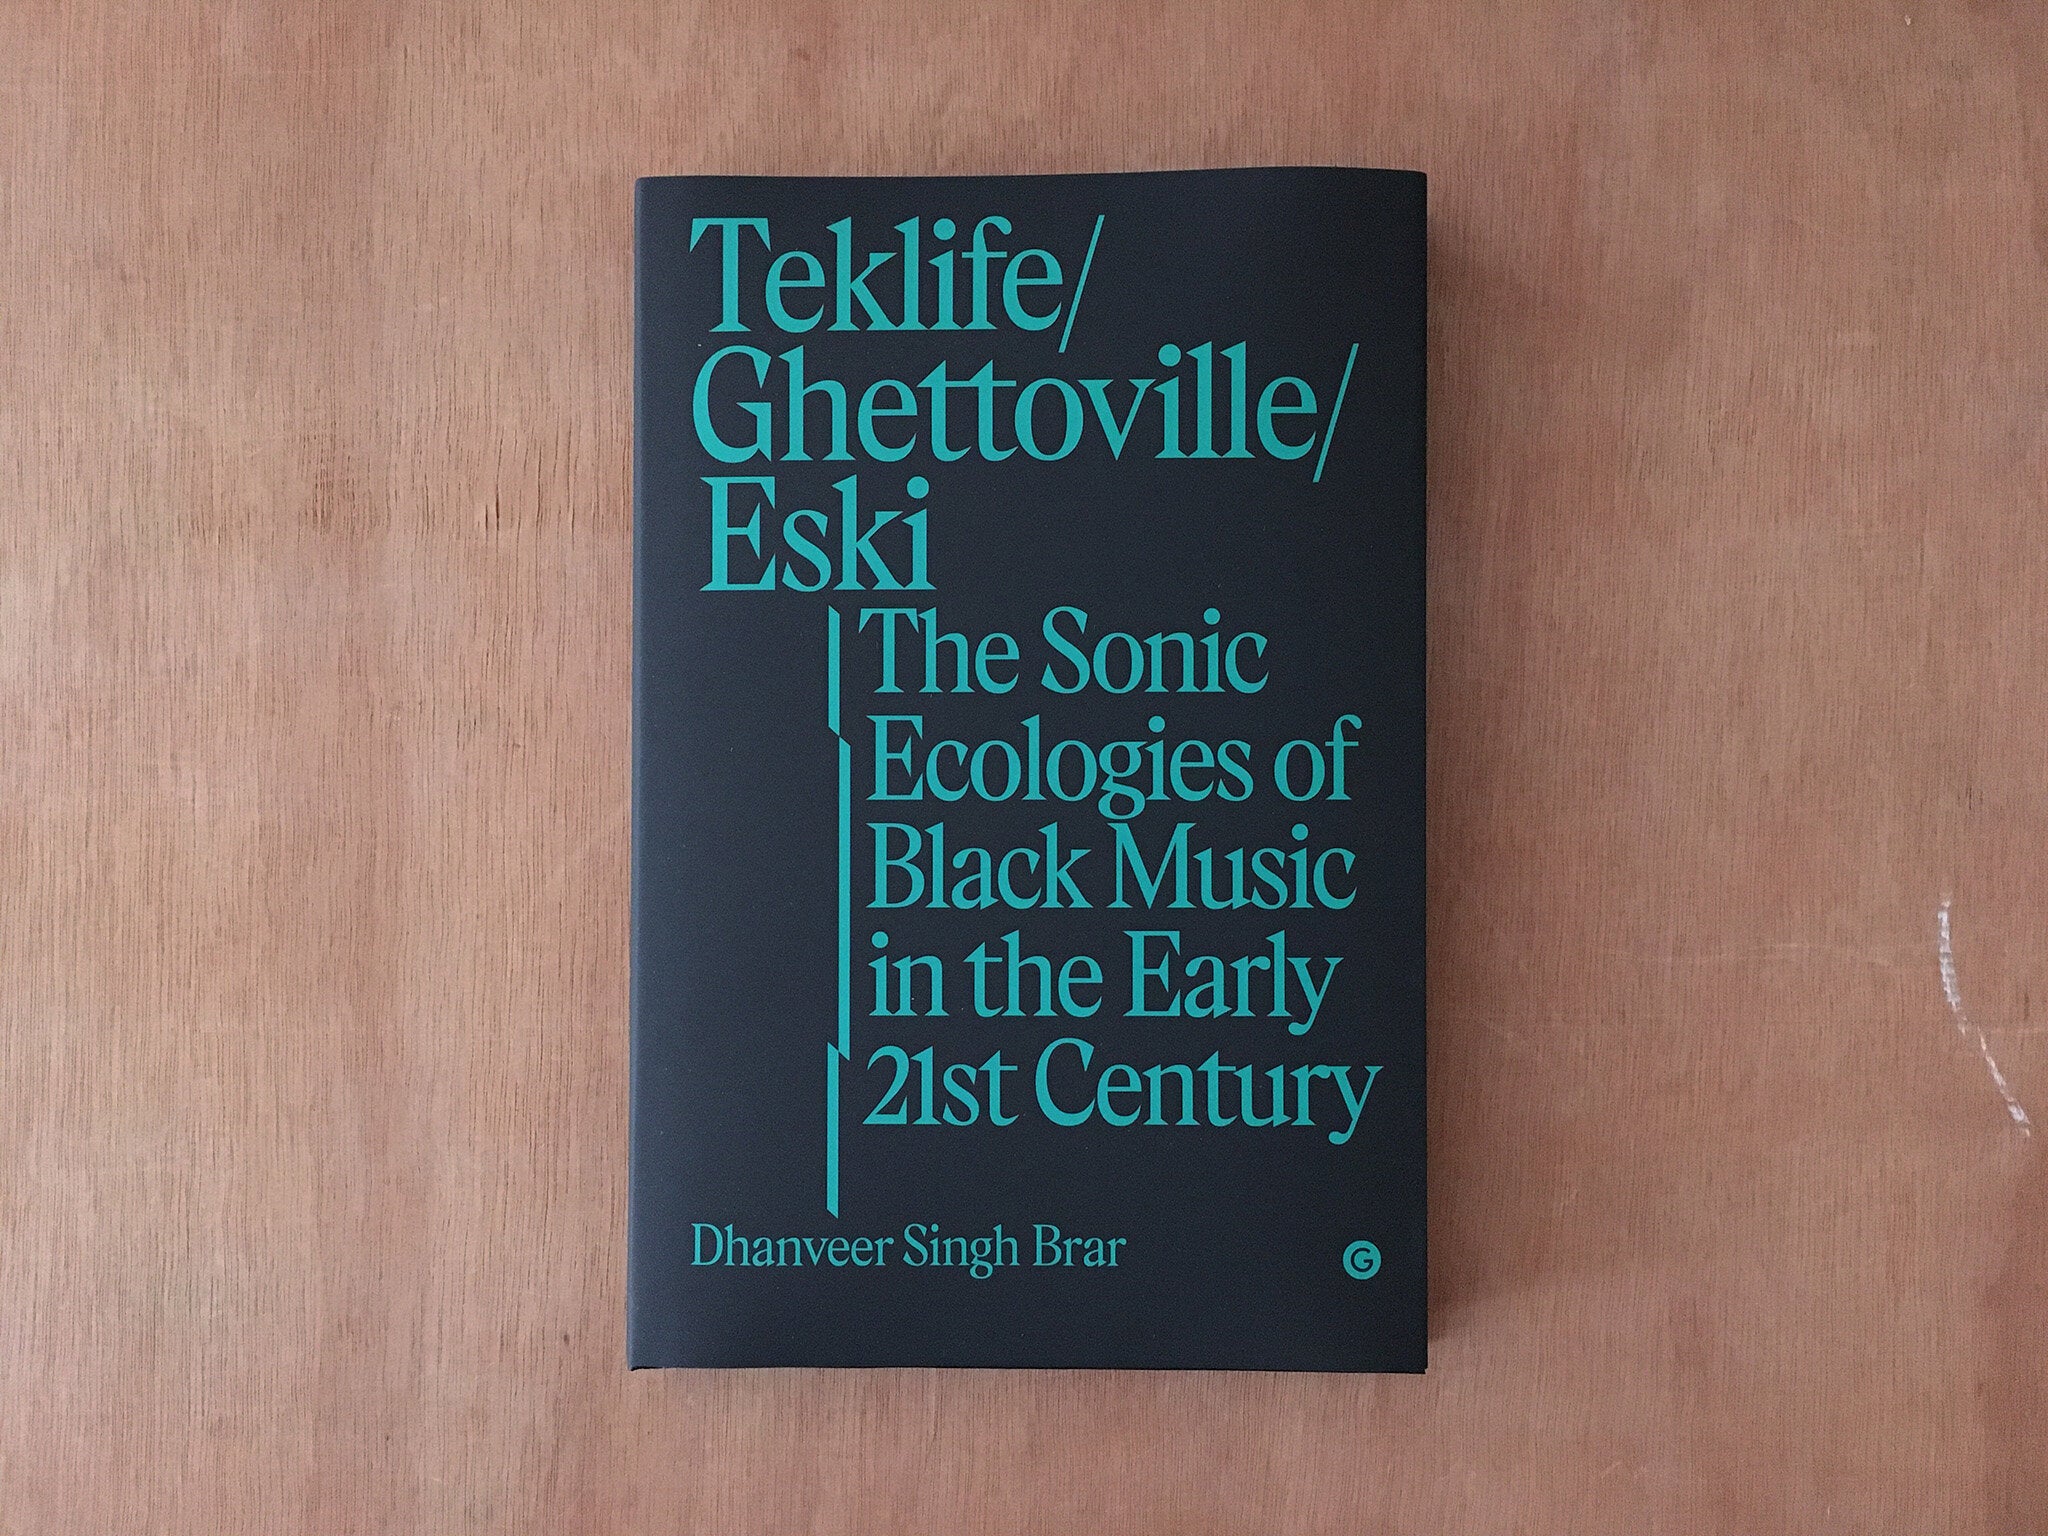 TEKLIFE, GHETTOVILLE, ESKI by Dhanveer Singh Brar